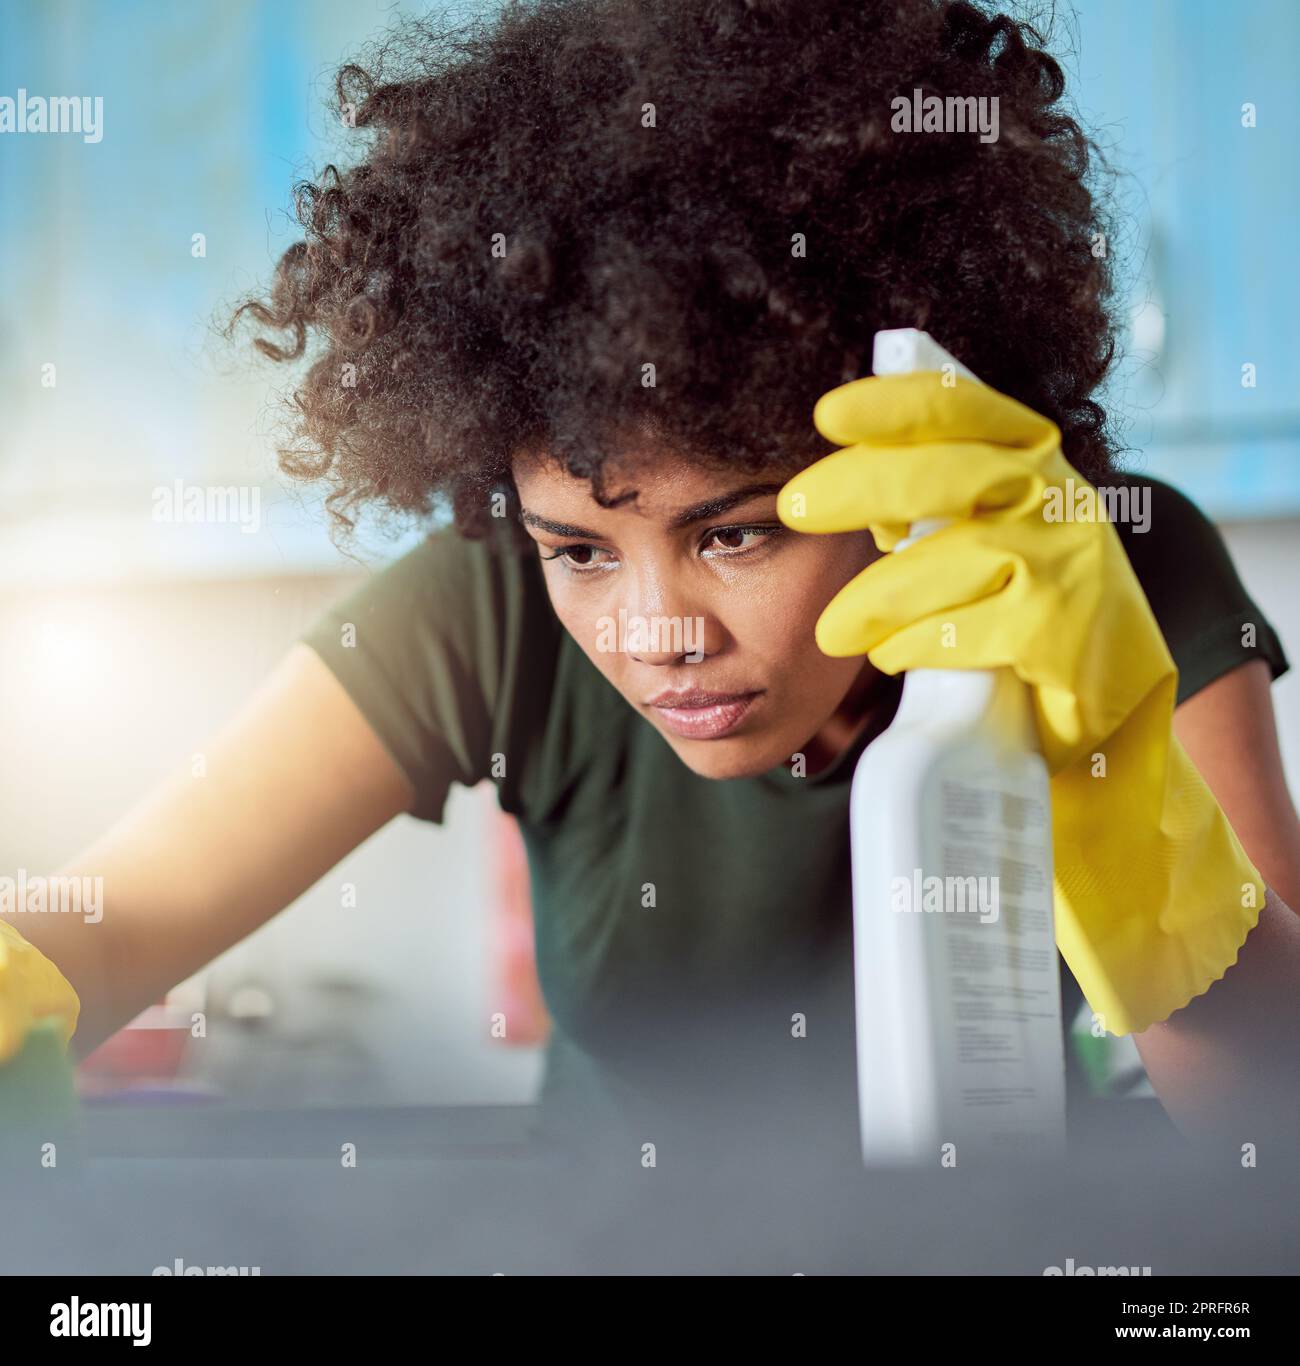 Ich habe keine Angst vor Keimen. Eine attraktive junge Frau mit gelben Handschuhen, die ihr Zuhause putzt. Stockfoto